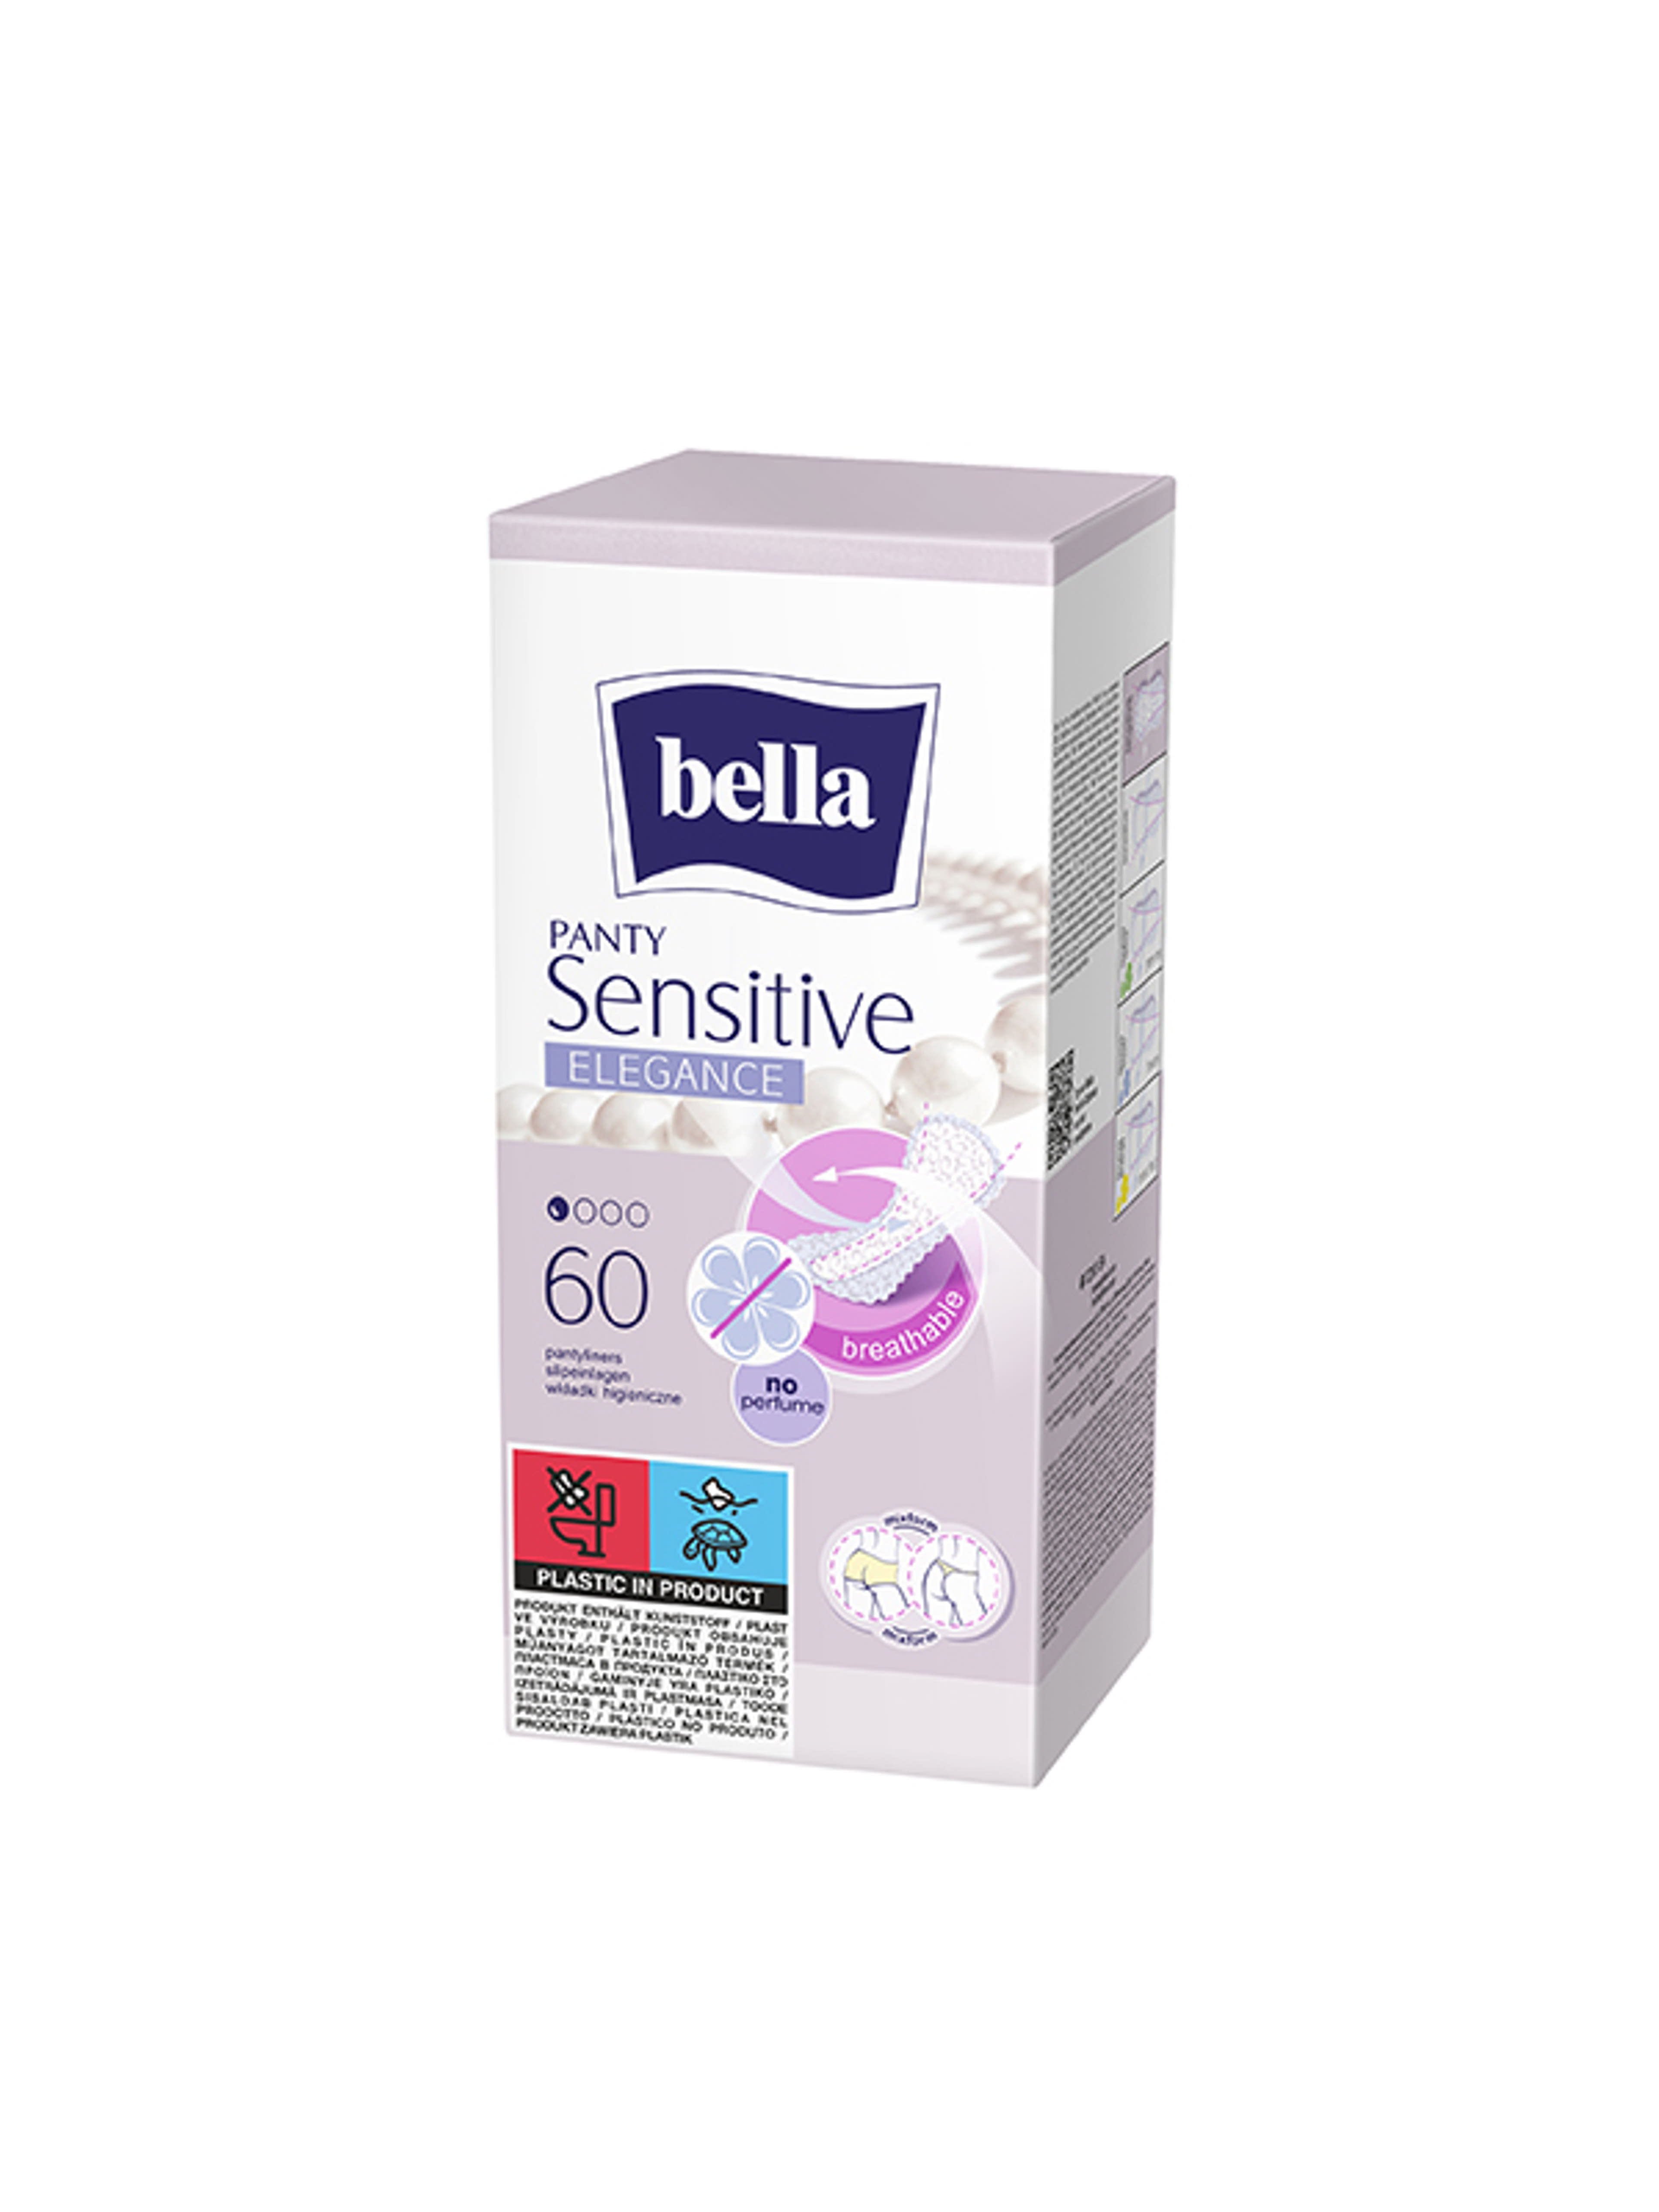 Bella Panty Sensitive Elegance tisztasági betét - 60 db